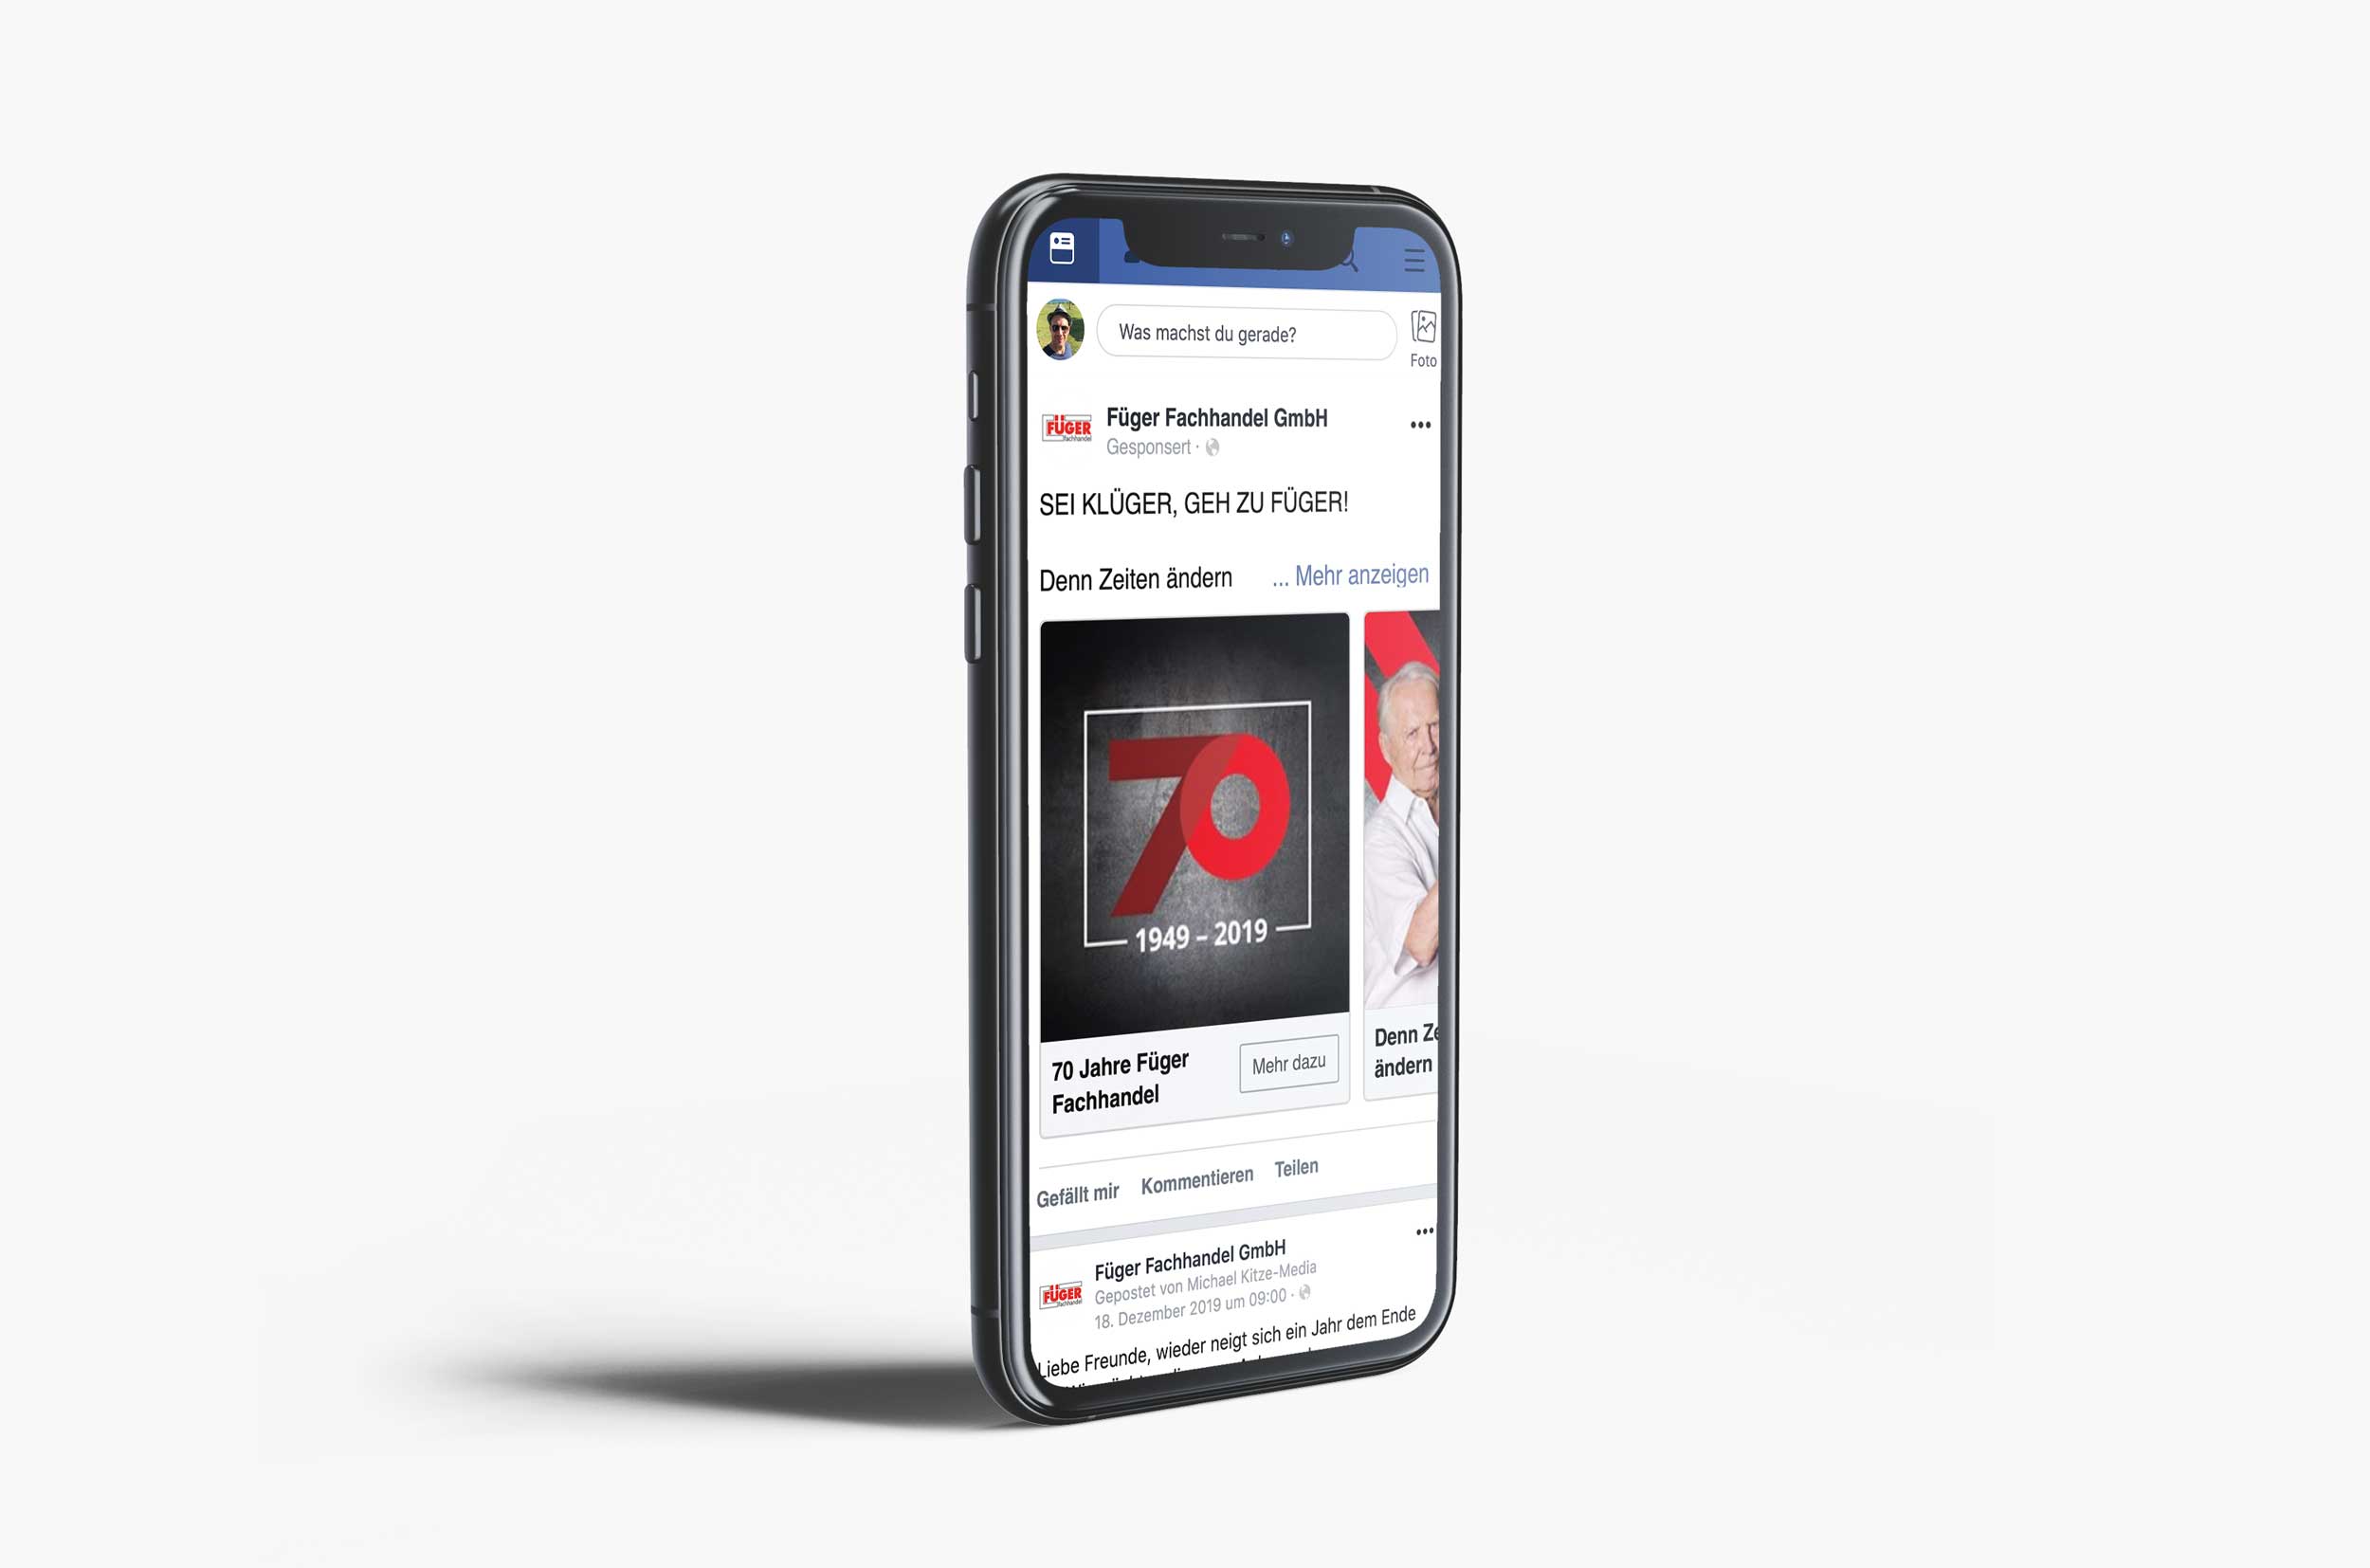 Case Füger Fachhandel Mockup Facebook Anzeige iPhone